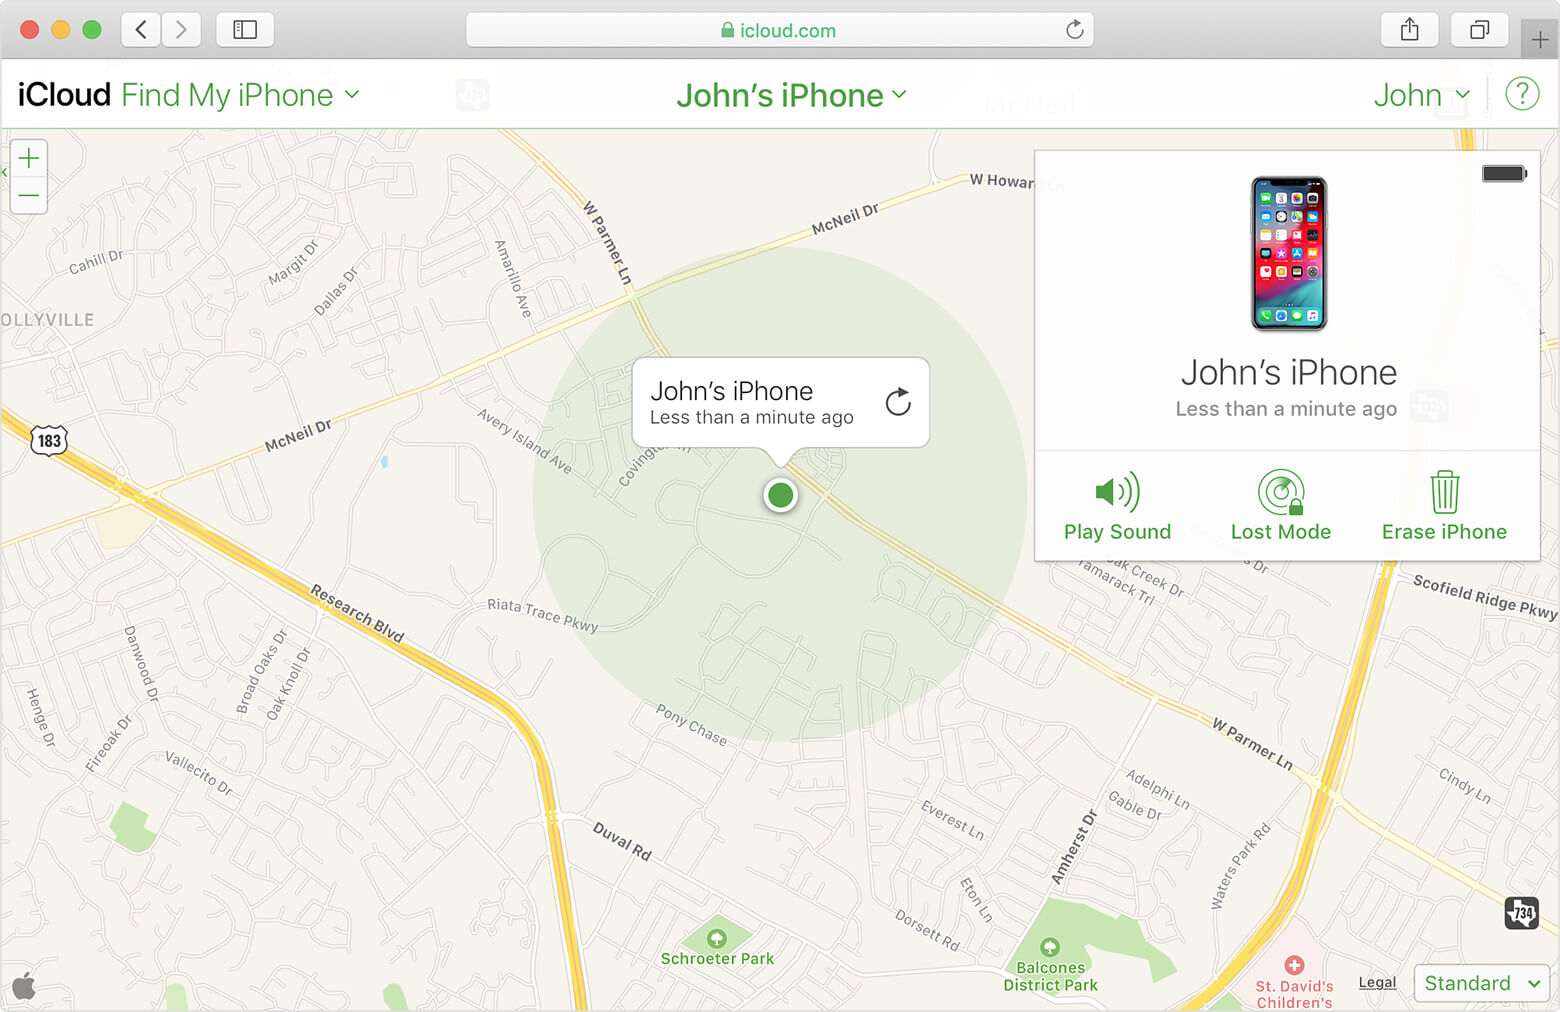 ¿Cómo se rastrea el iPhone de un miembro de la familia? - Detalles de la ubicación de los miembros de la familia